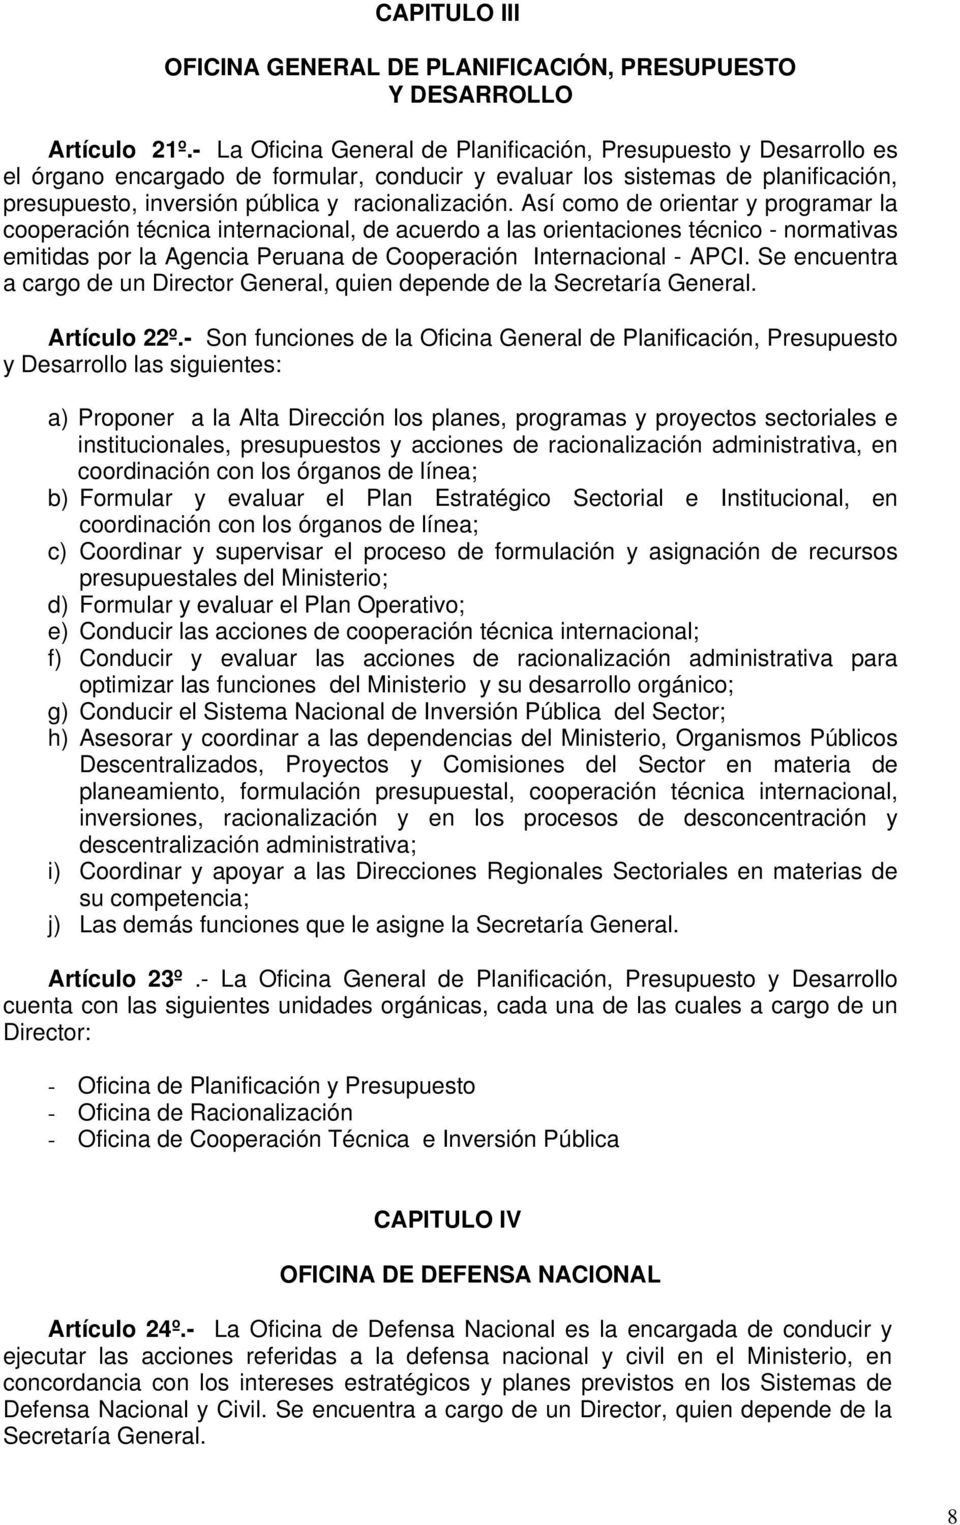 Así como de orientar y programar la cooperación técnica internacional, de acuerdo a las orientaciones técnico - normativas emitidas por la Agencia Peruana de Cooperación Internacional - APCI.